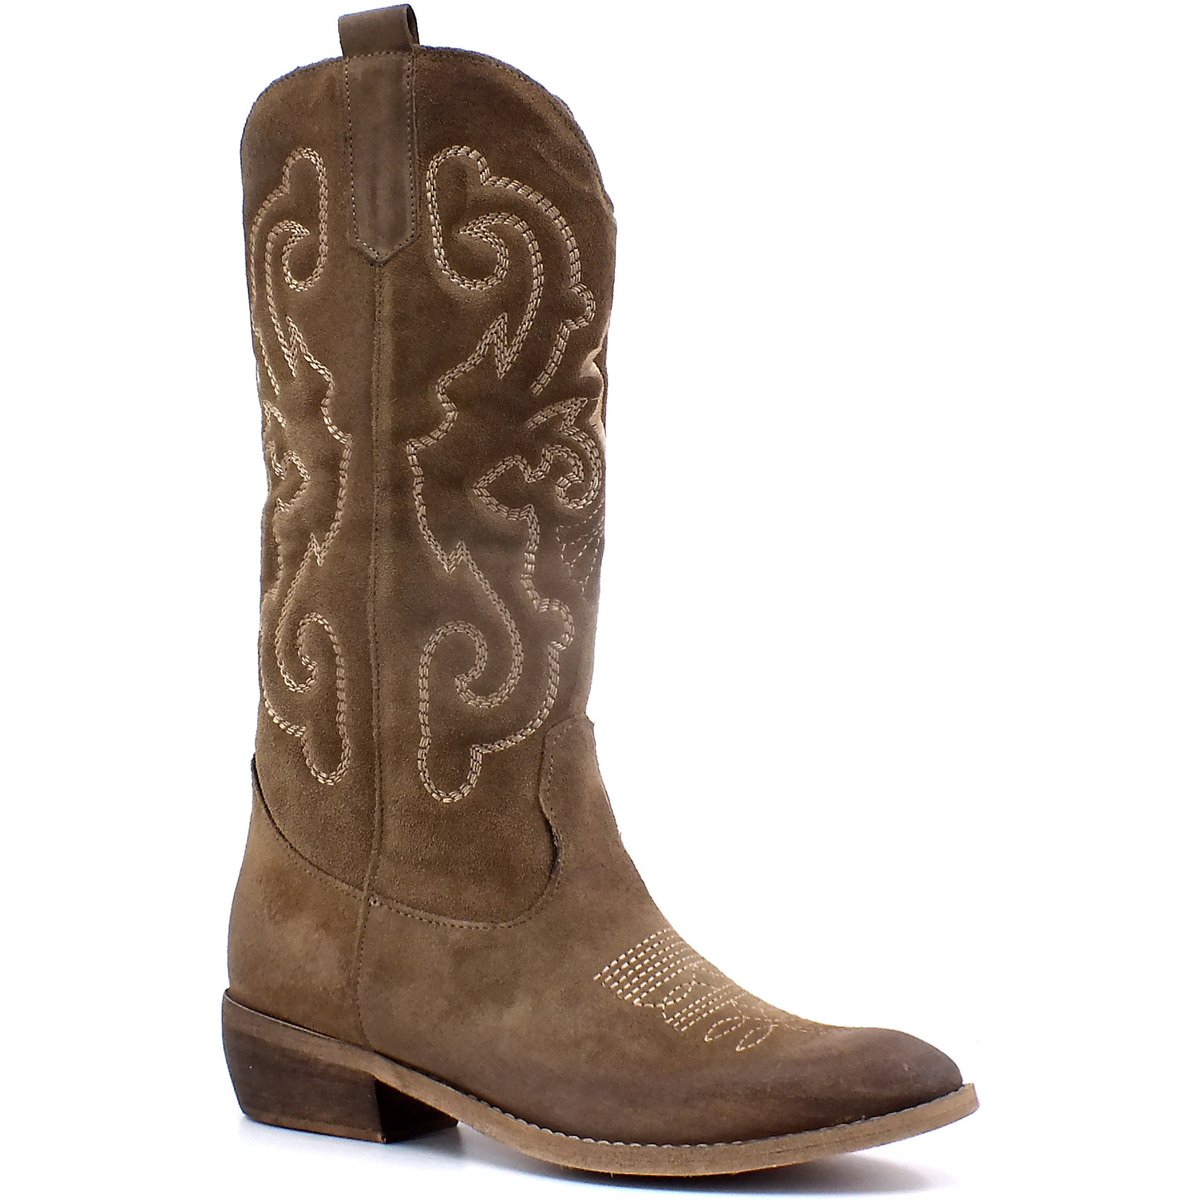 Chaussures Femme nbspTour de poitrine :  Stivaletto Texano Donna Taupe DFI301 Marron